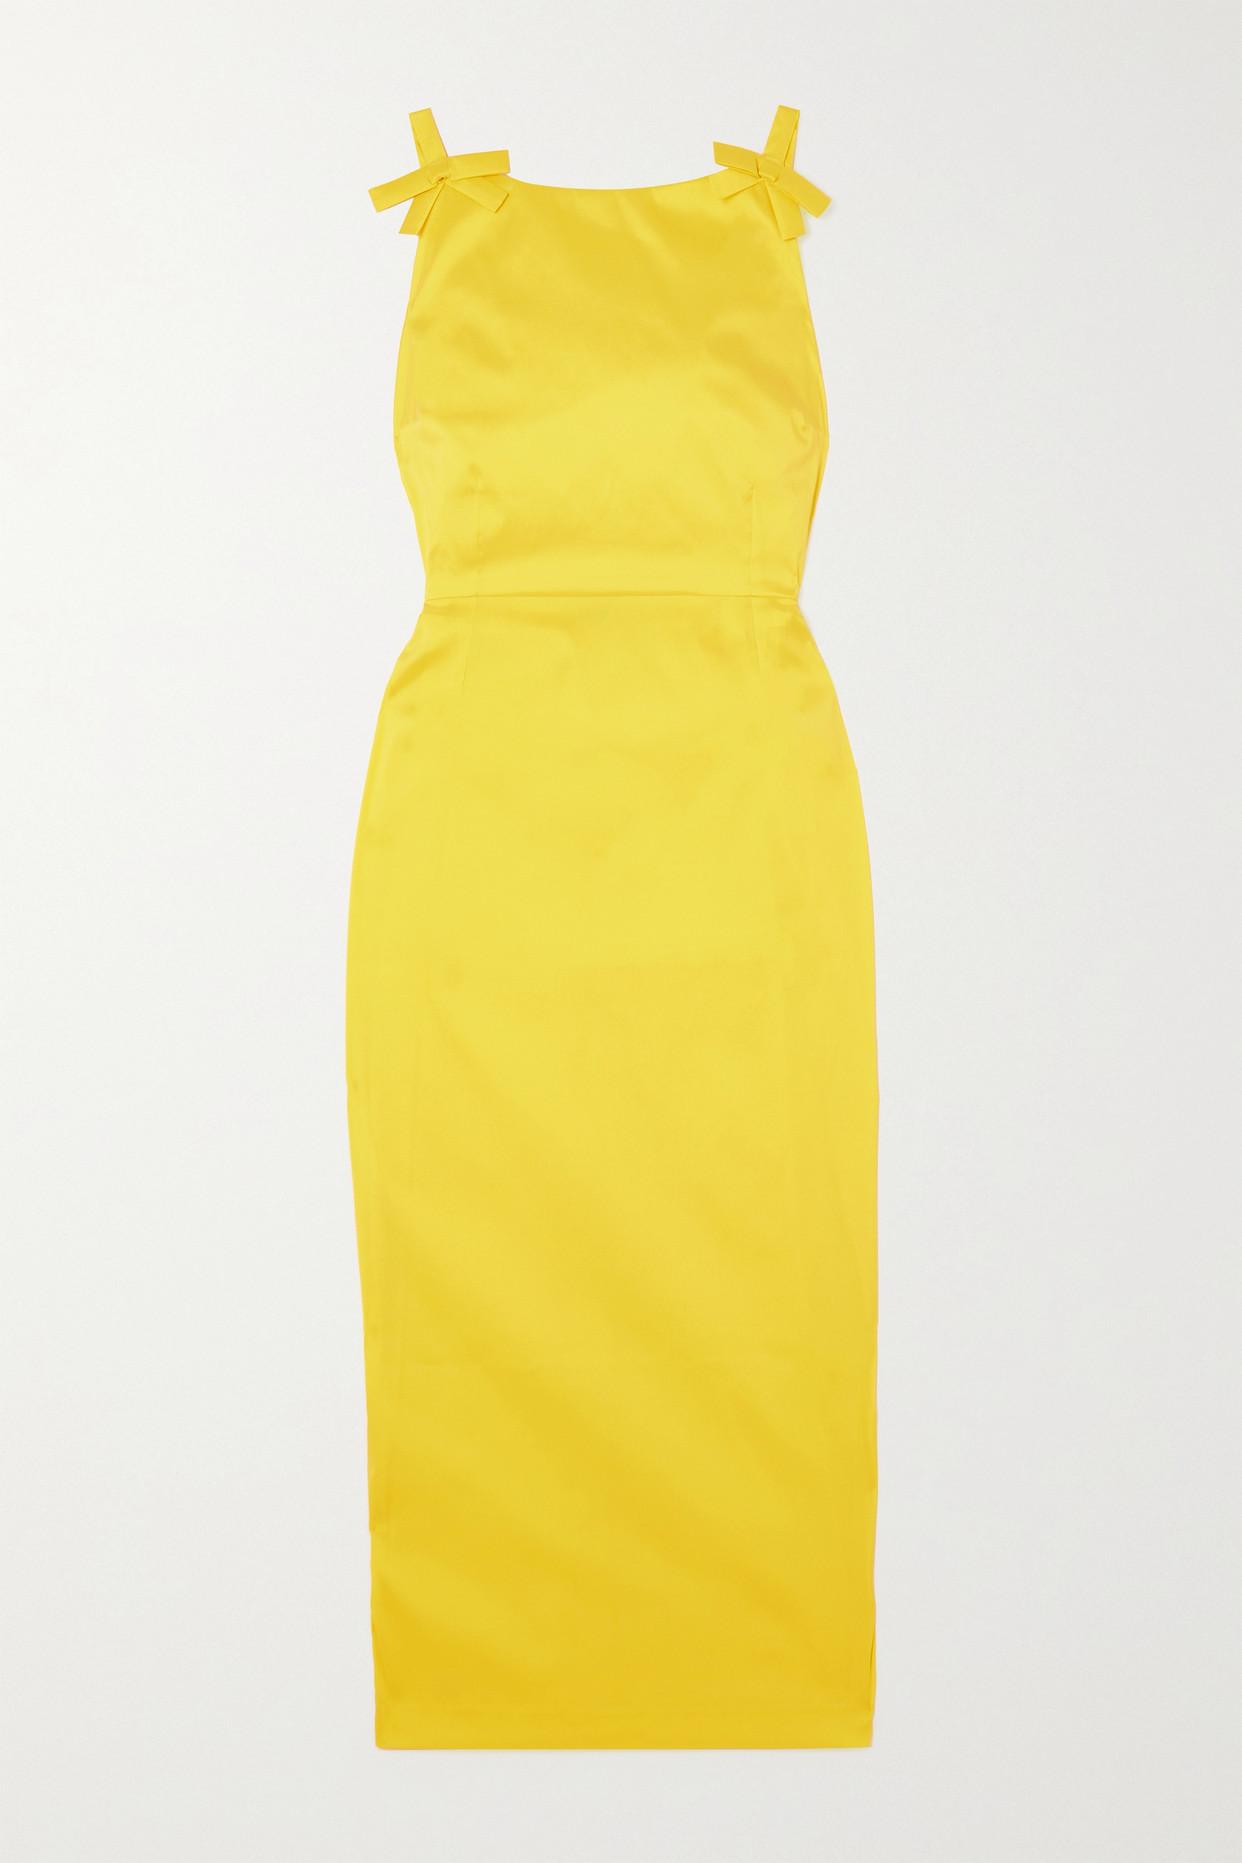 BERNADETTE Kim Open-back Bow-embellished Taffeta Midi Dress in Yellow ...